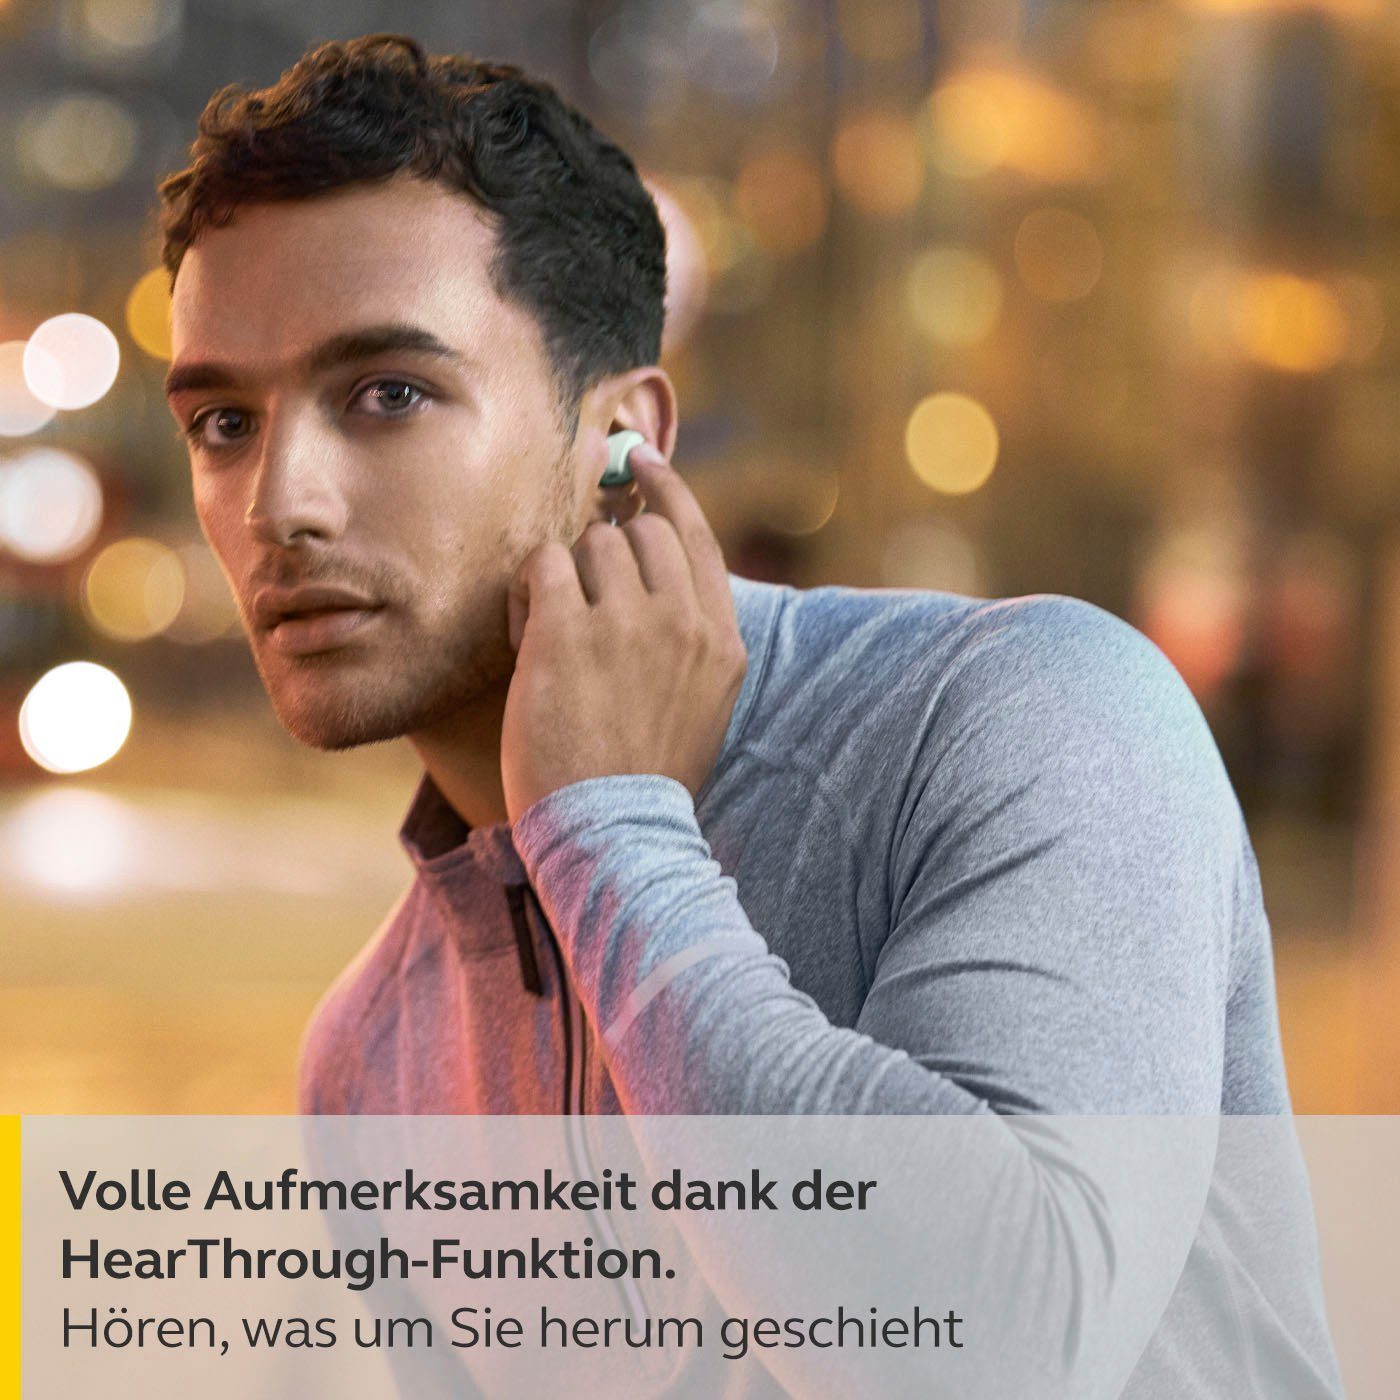 Jabra Elite 4 active Bluetooth-Kopfhörer Steuerung und Google Siri, Sprachsteuerung, Alexa, Musik, integrierte Bluetooth) Noise True Assistant, für (Active (ANC), Cancelling Wireless, Anrufe mint Freisprechfunktion